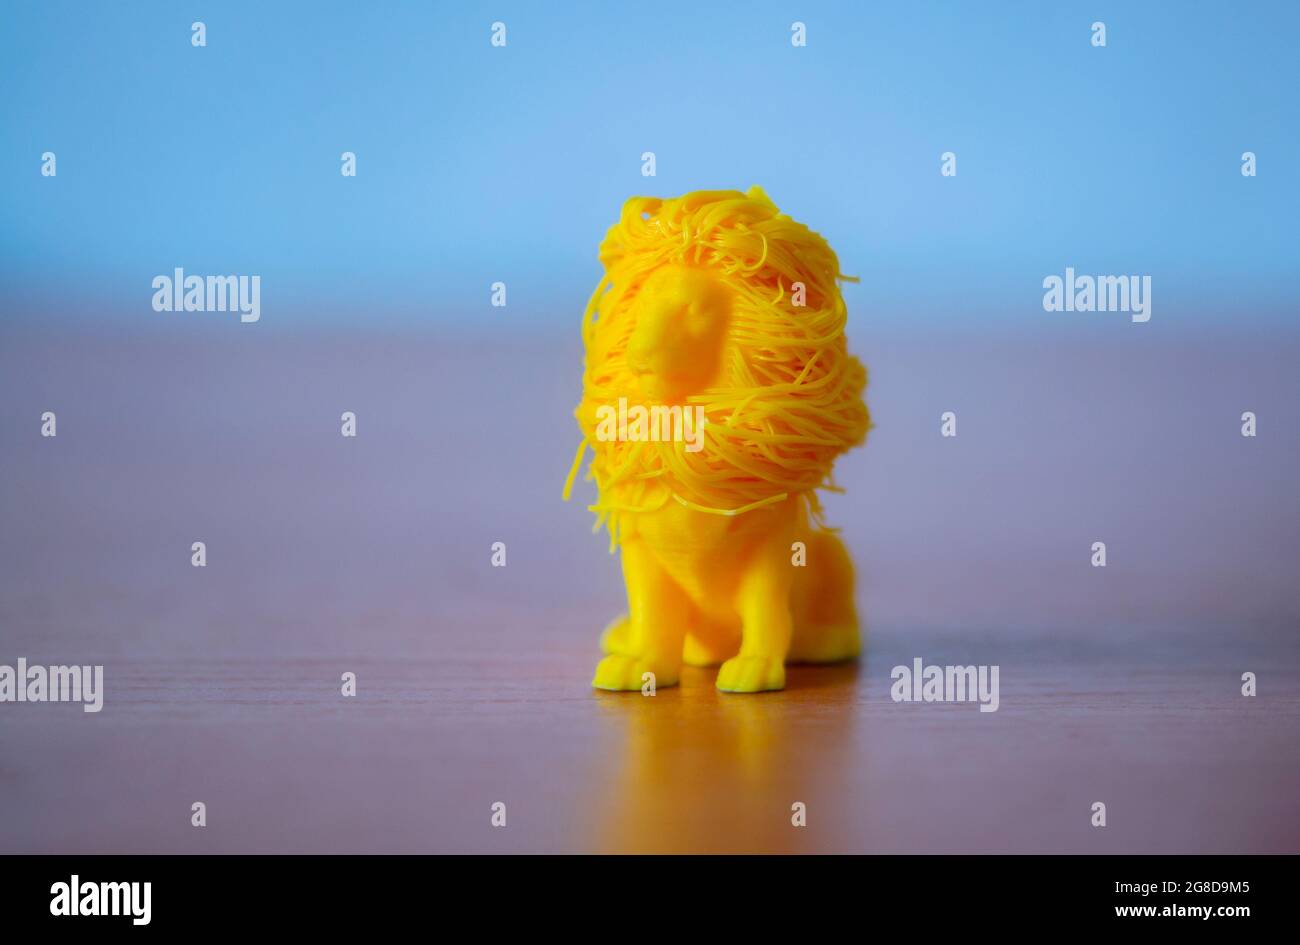 Modello 3D stampato su stampante 3d da plastica fusa a caldo. Foto Stock